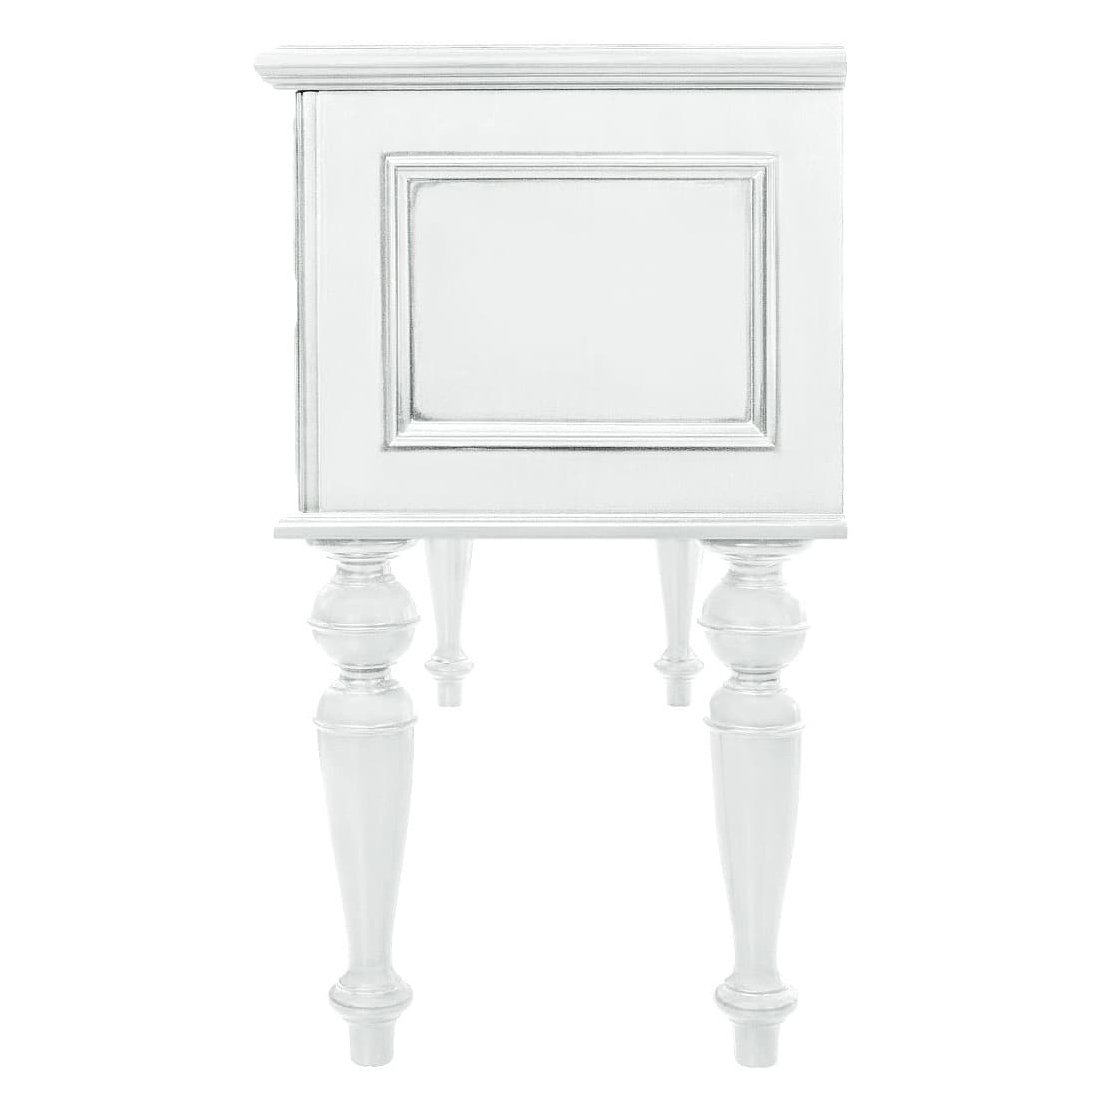 Стол туалетный Timber Неаполь, 131x42x77 см цвет: белый с серебром (T-513)T-513